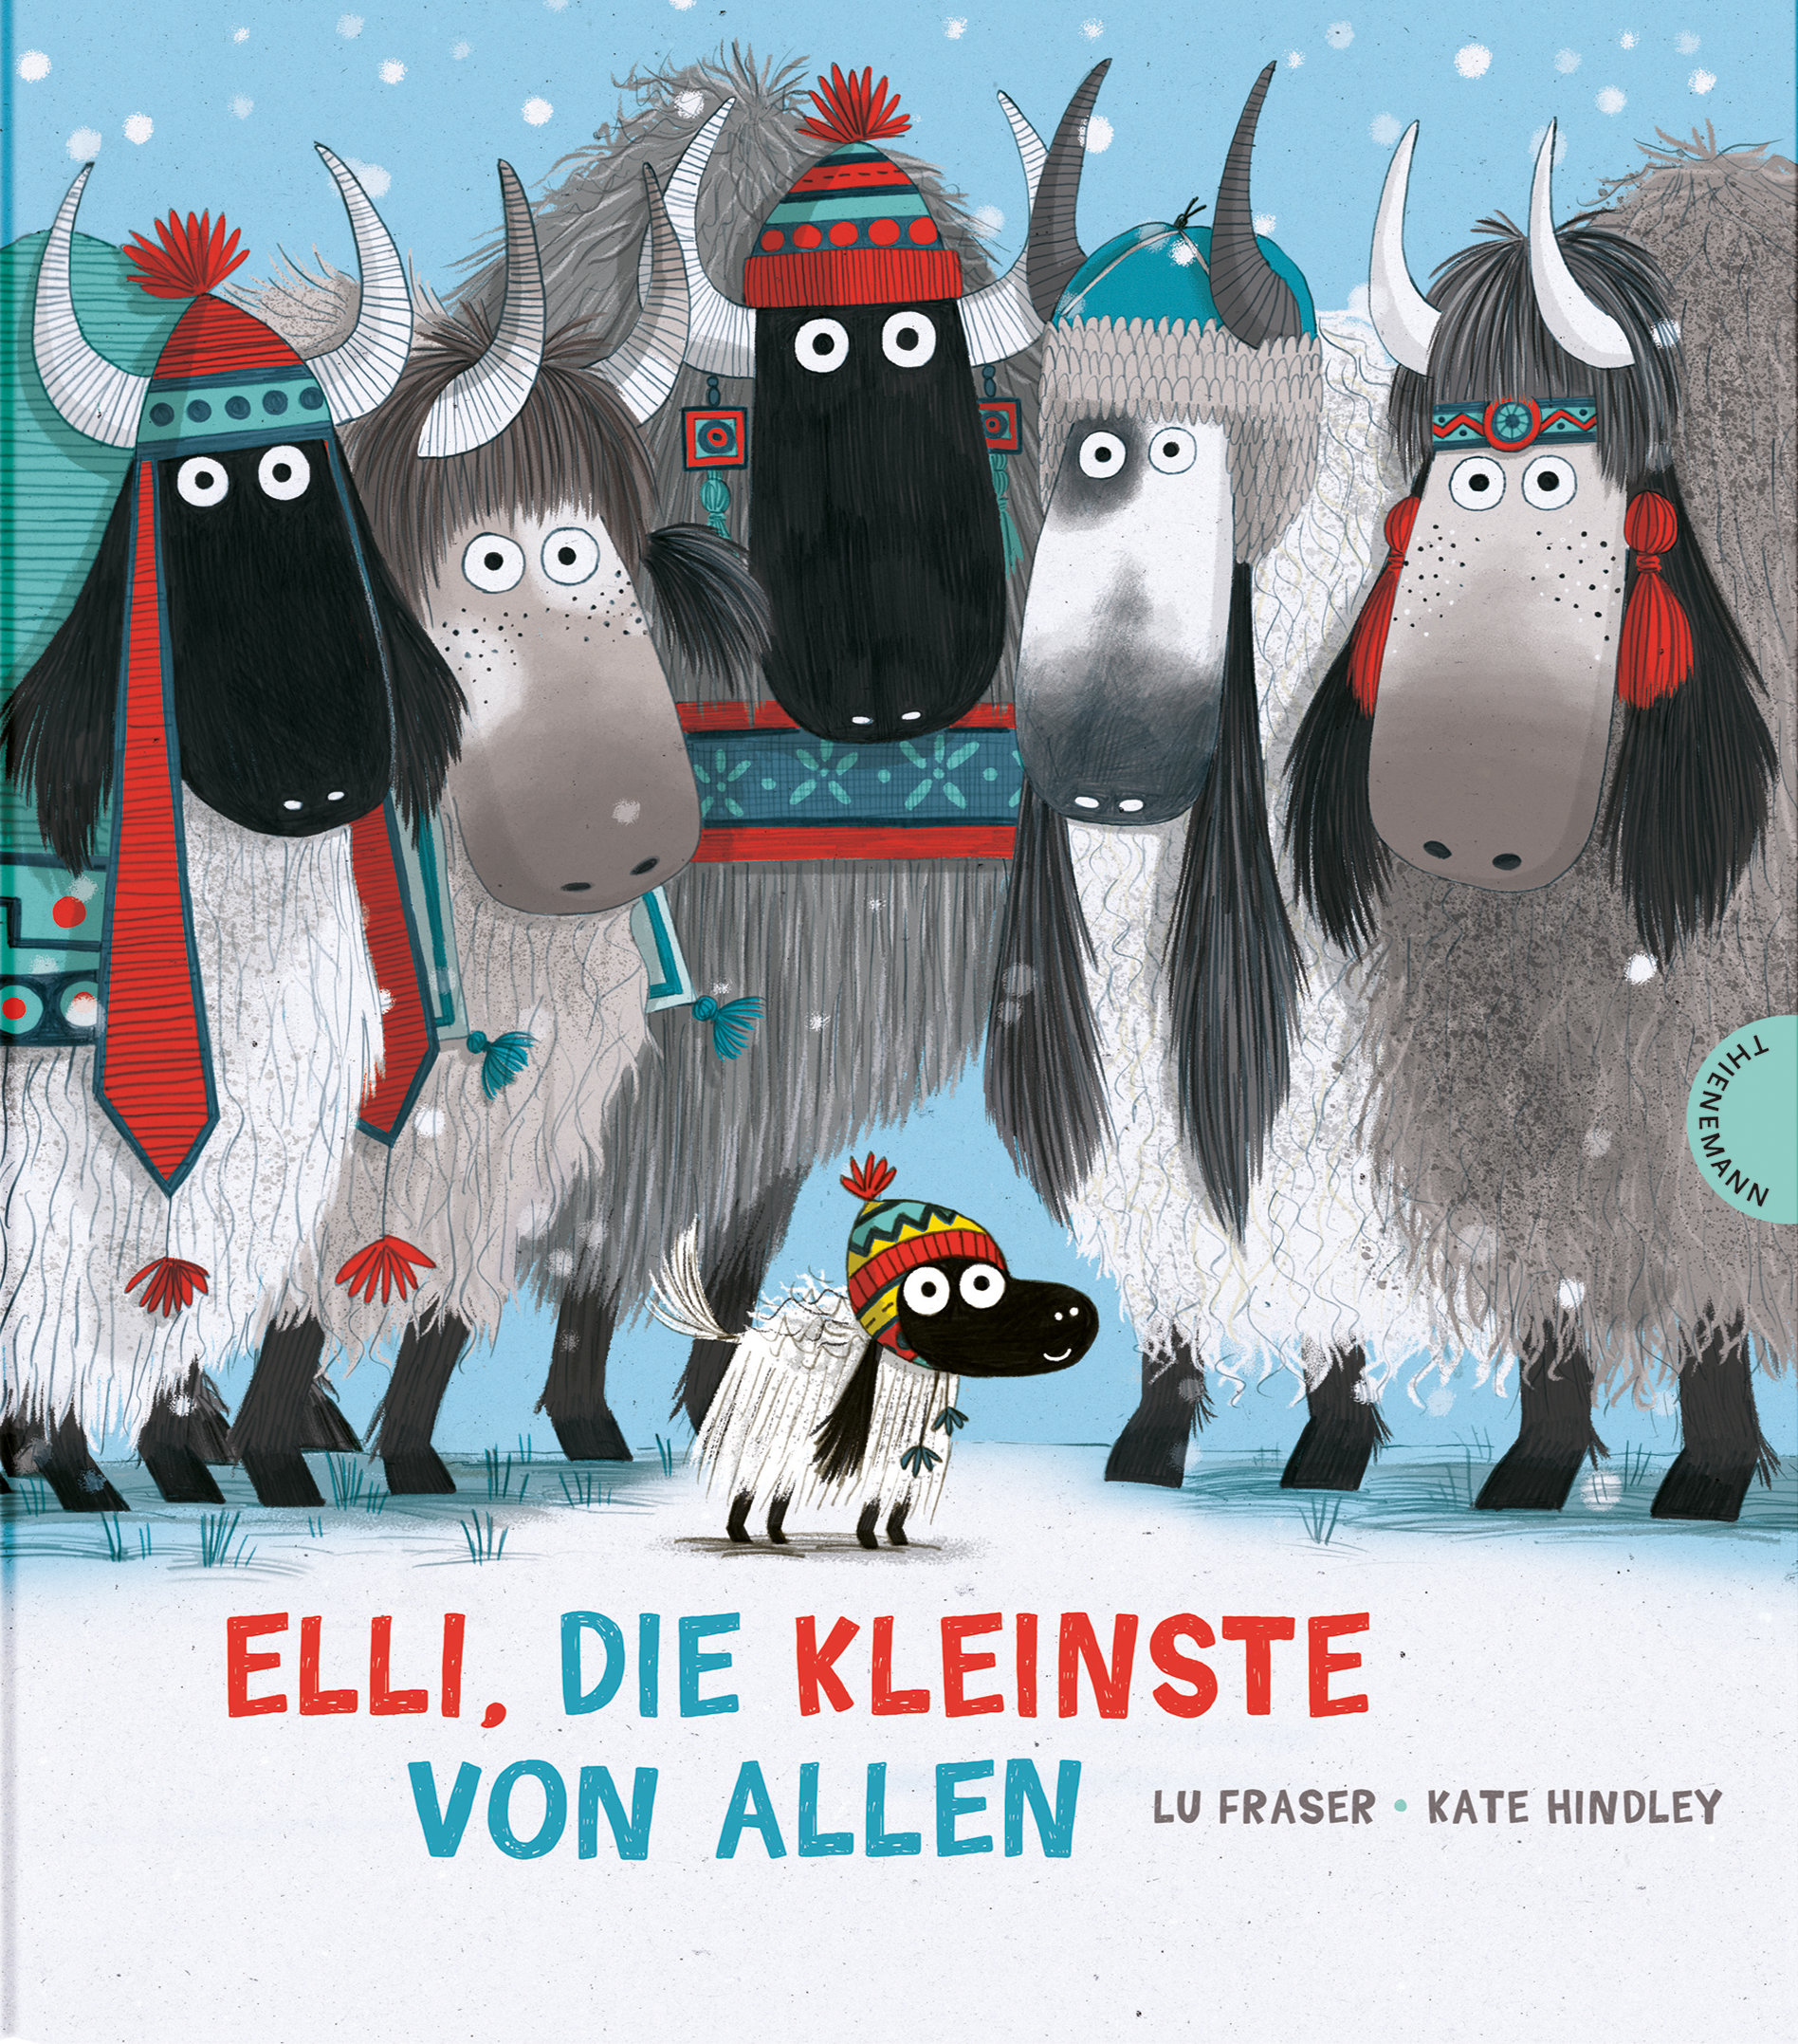 Buchcover "Elli, die kleinste von allen", Thienemann